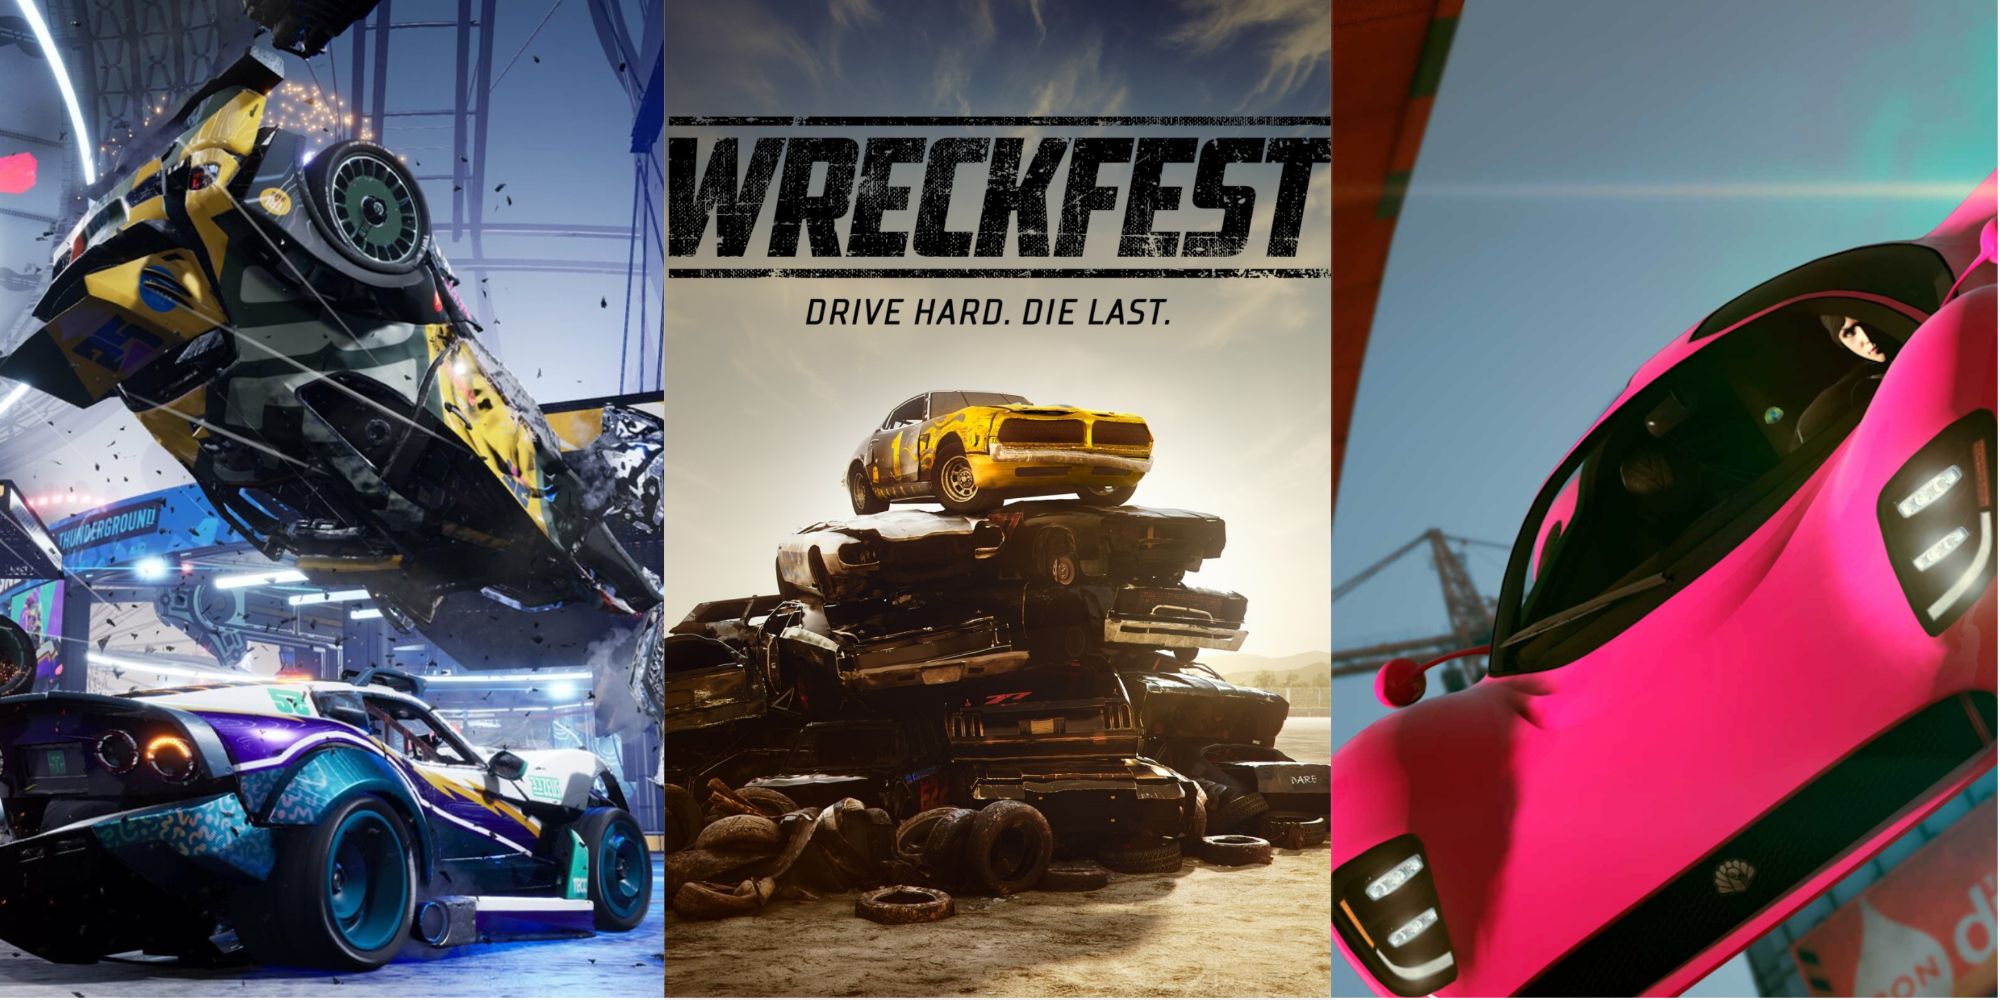 10 Best Games Like Wreckfest